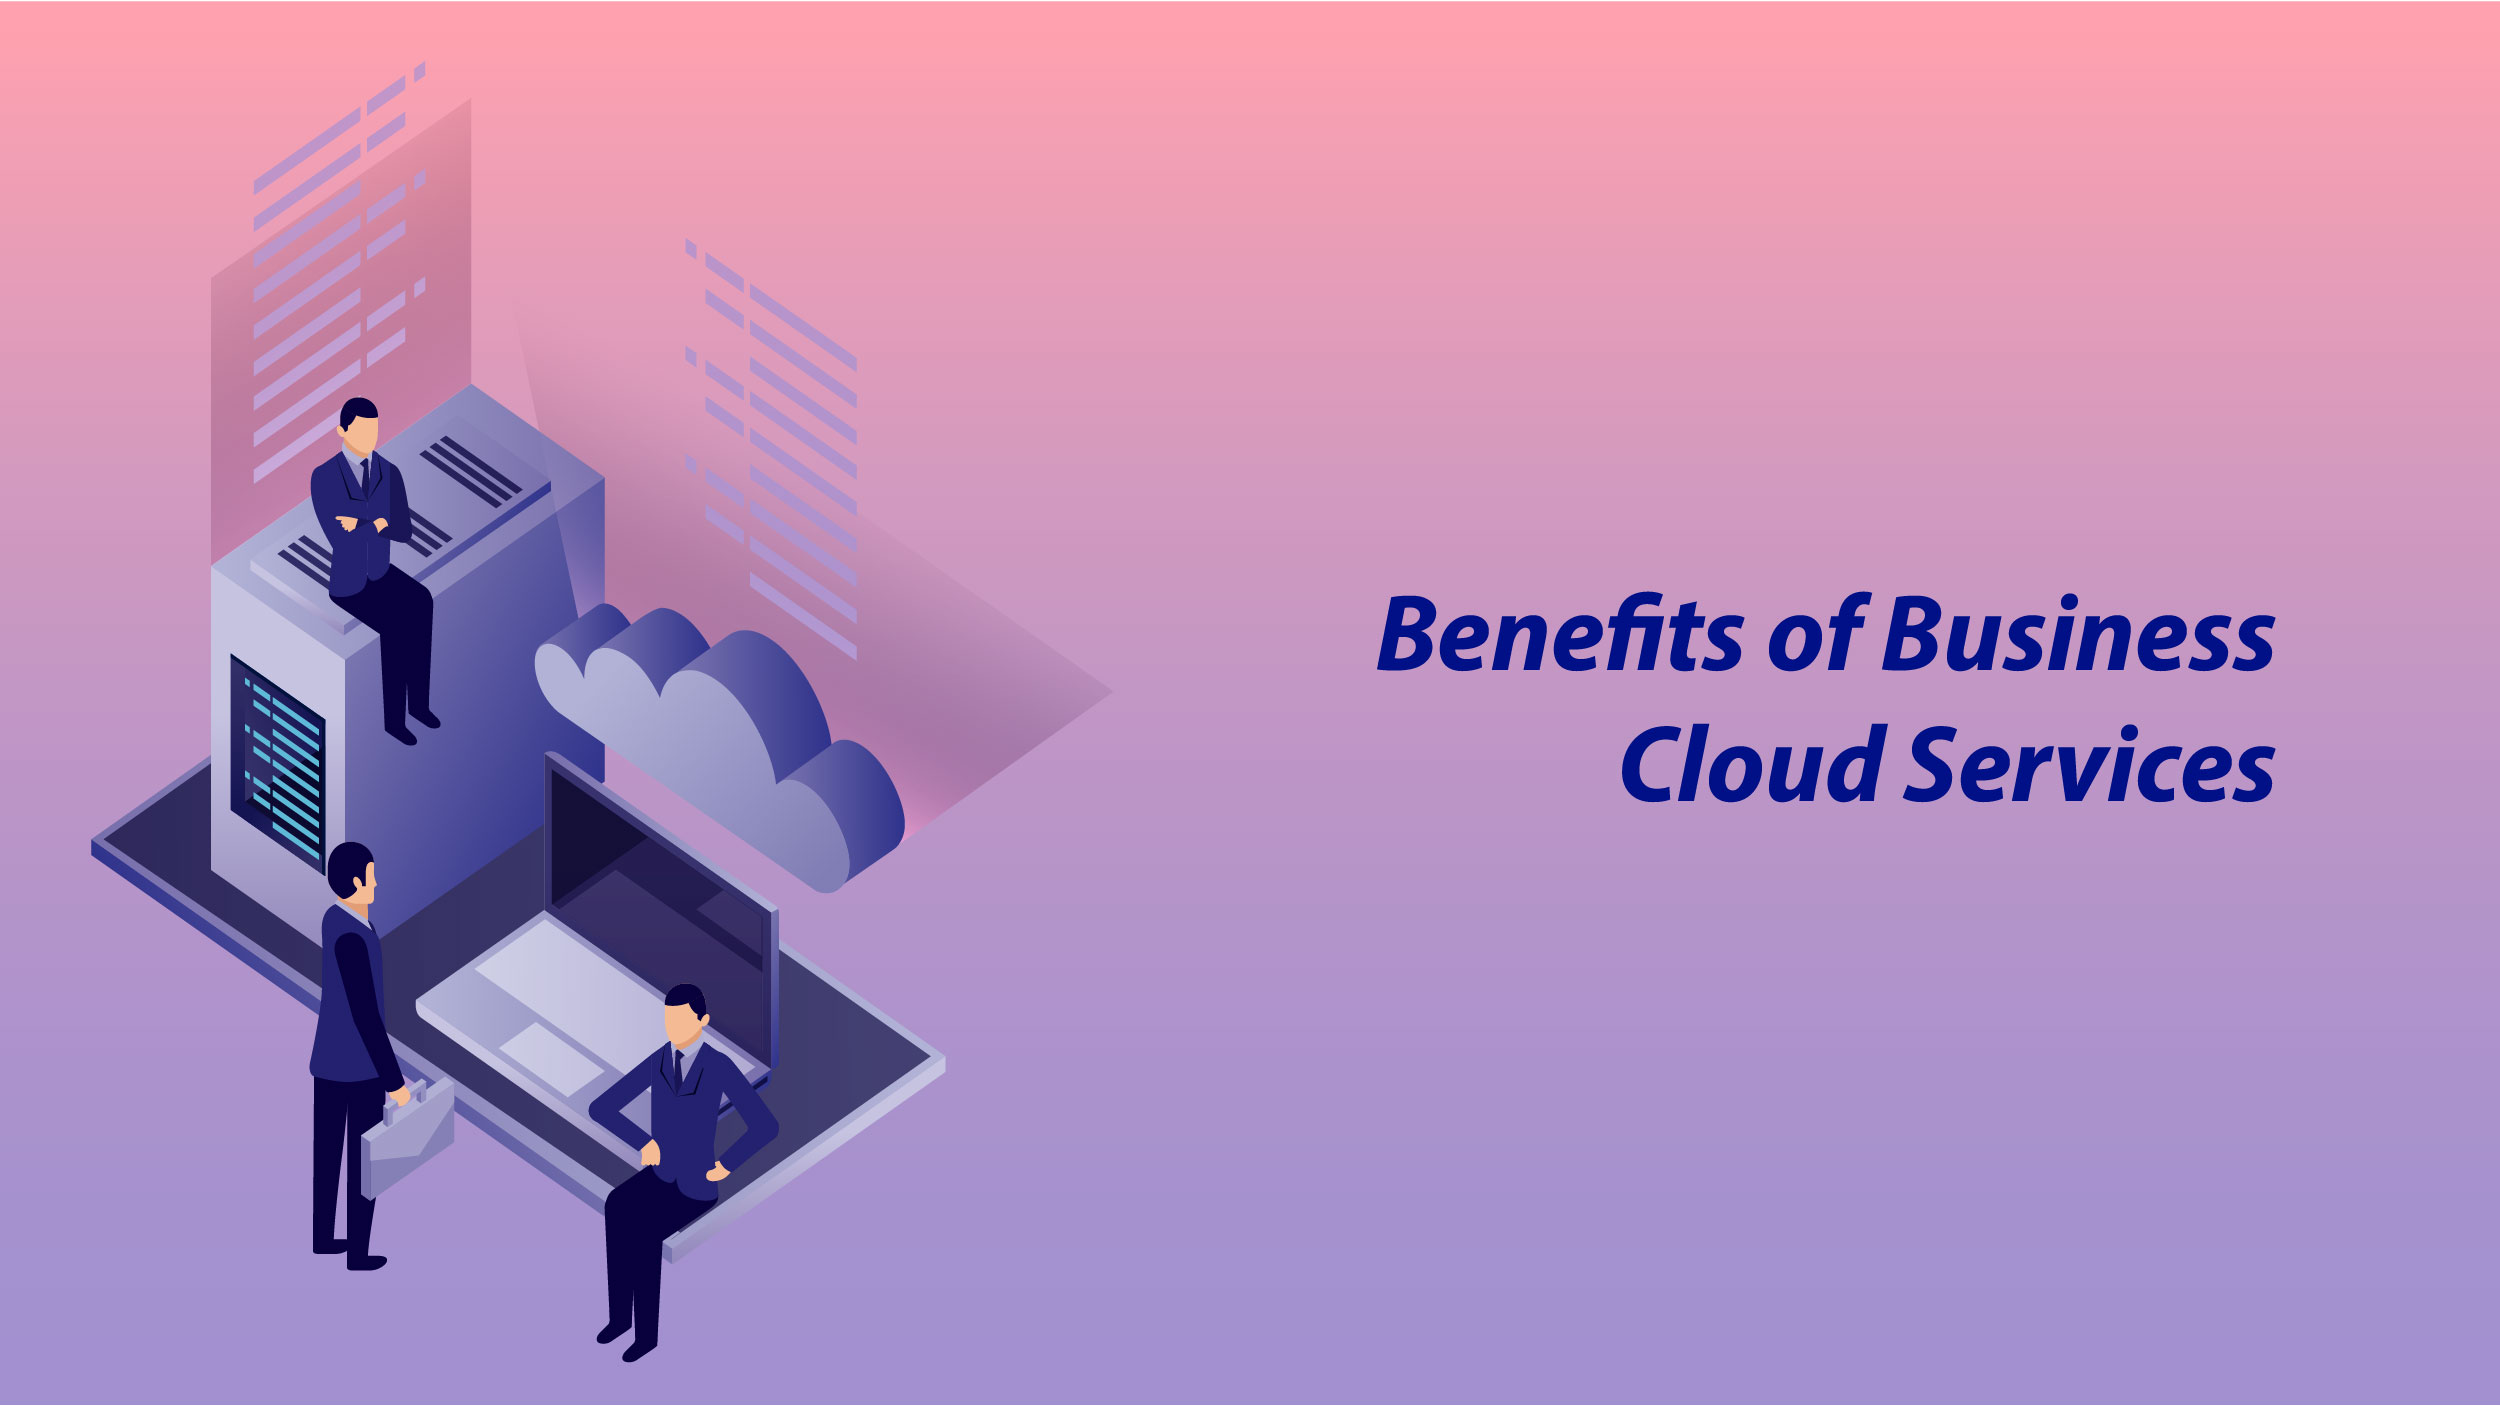 Business Cloud Services